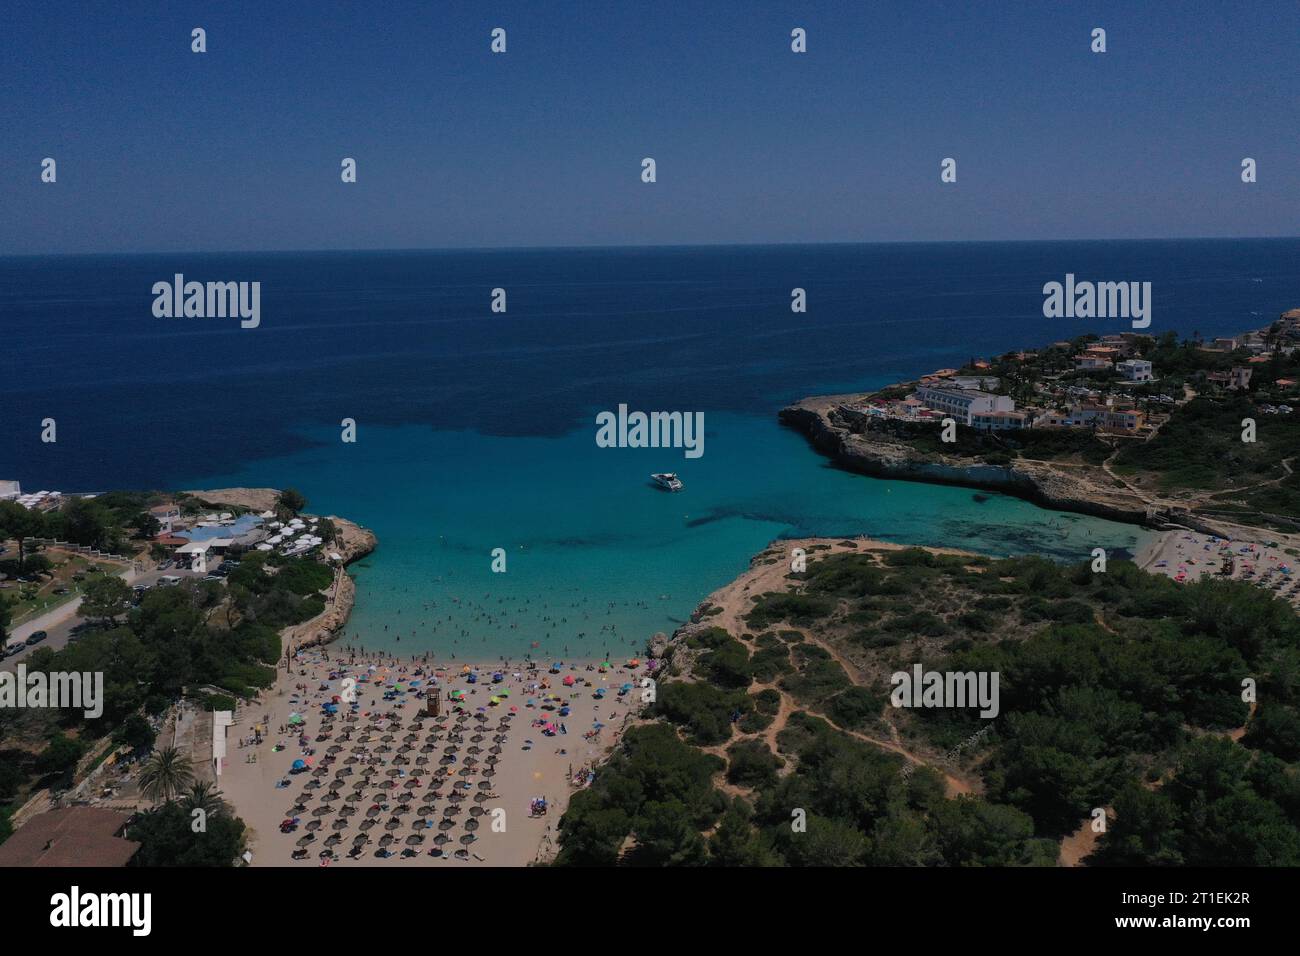 Imagen aerea de playas de Mallorca Stock Photo